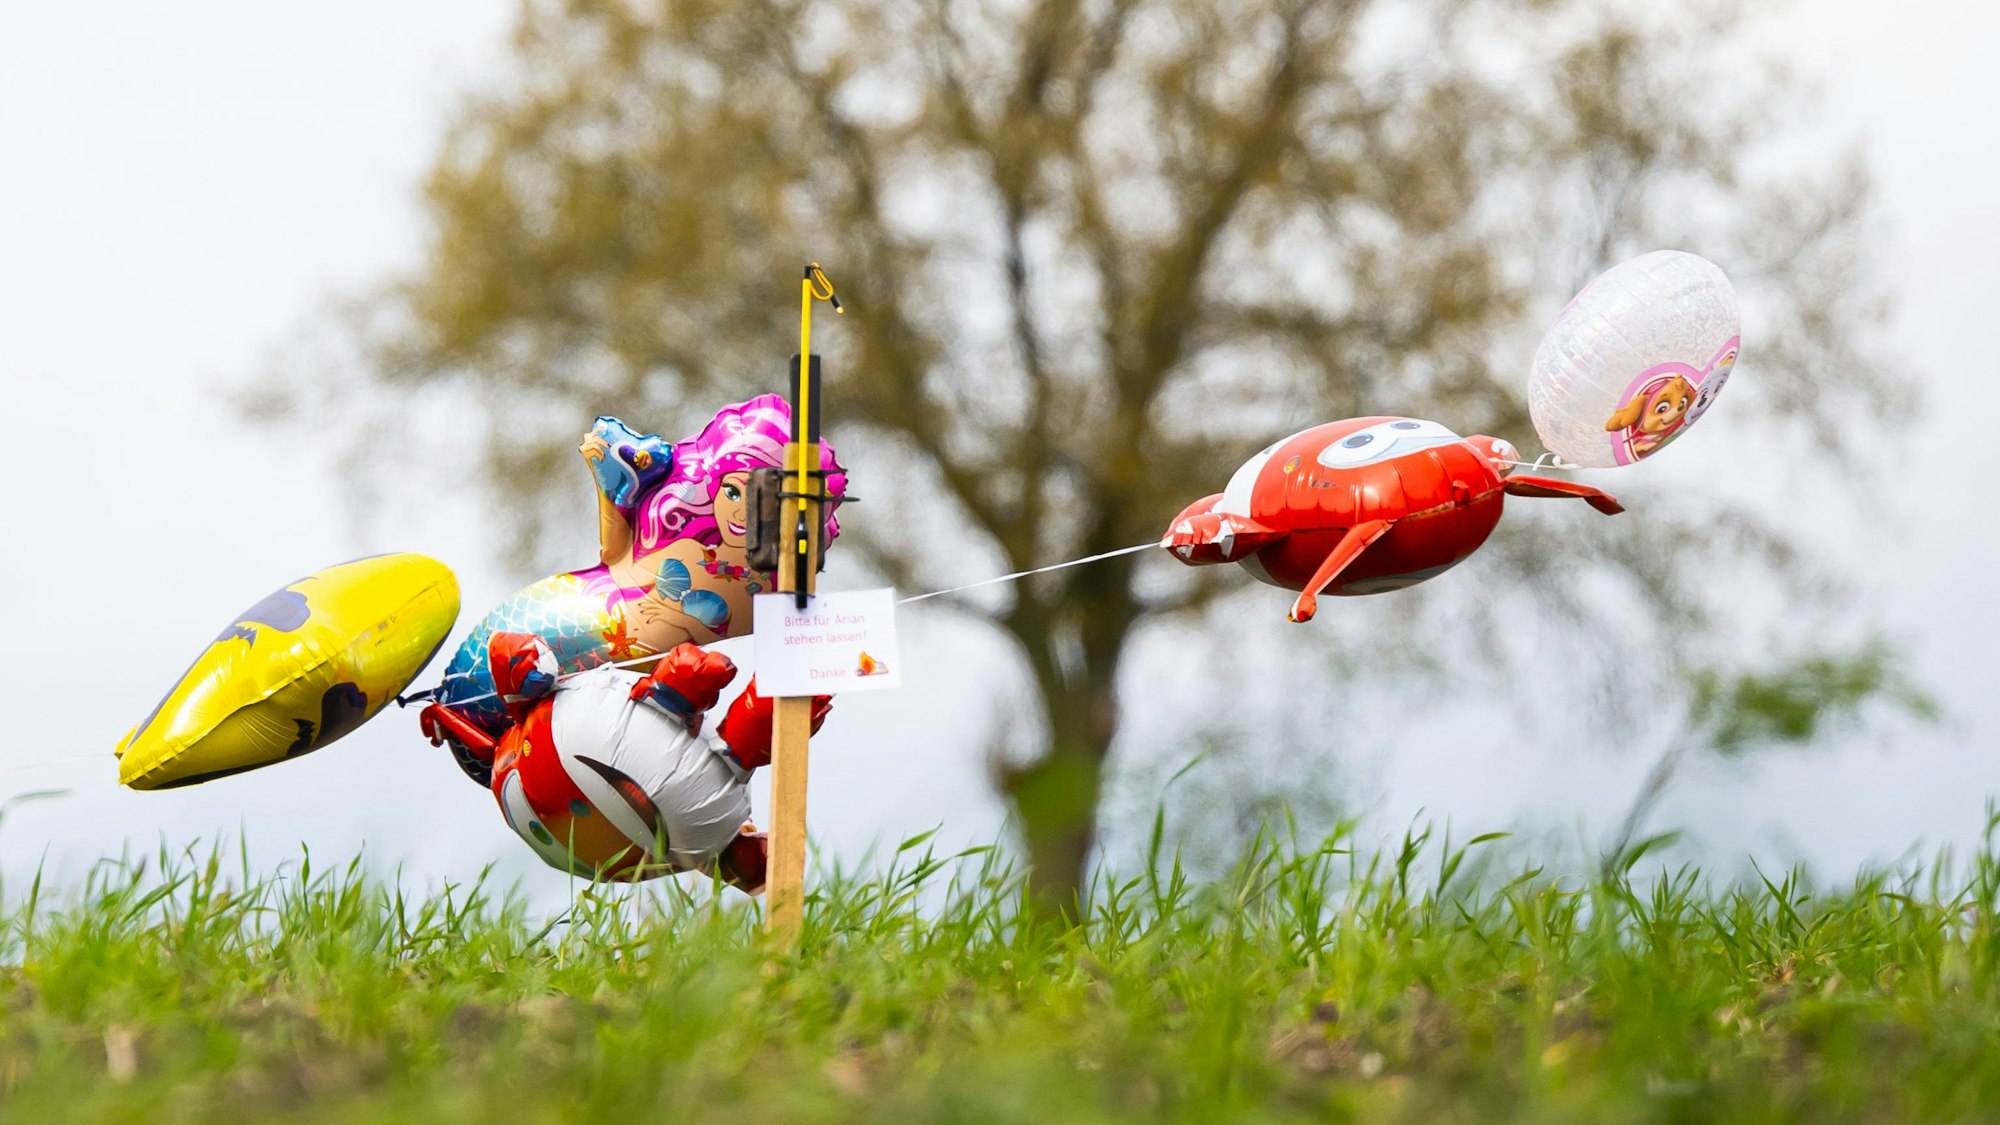 Bei der Suche nach dem vermissten Arian setzt die Polizei auf unkonventionelle Methoden. Schokolade und Luftballons sollen den autistischen Jungen anlocken.